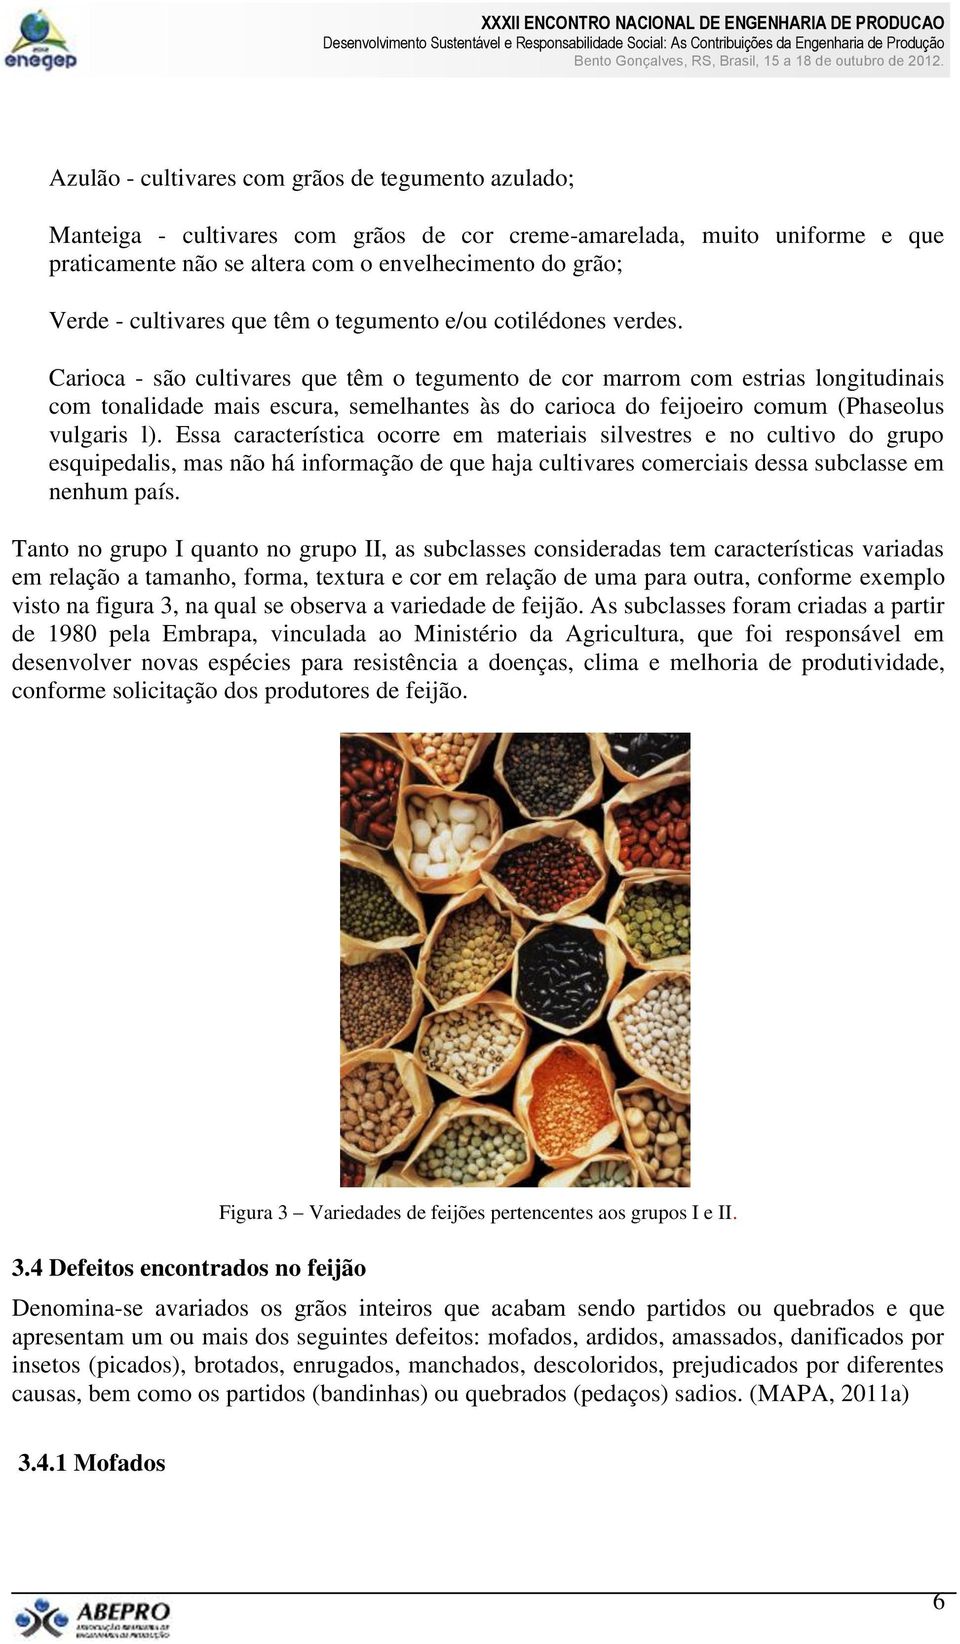 Carioca - são cultivares que têm o tegumento de cor marrom com estrias longitudinais com tonalidade mais escura, semelhantes às do carioca do feijoeiro comum (Phaseolus vulgaris l).